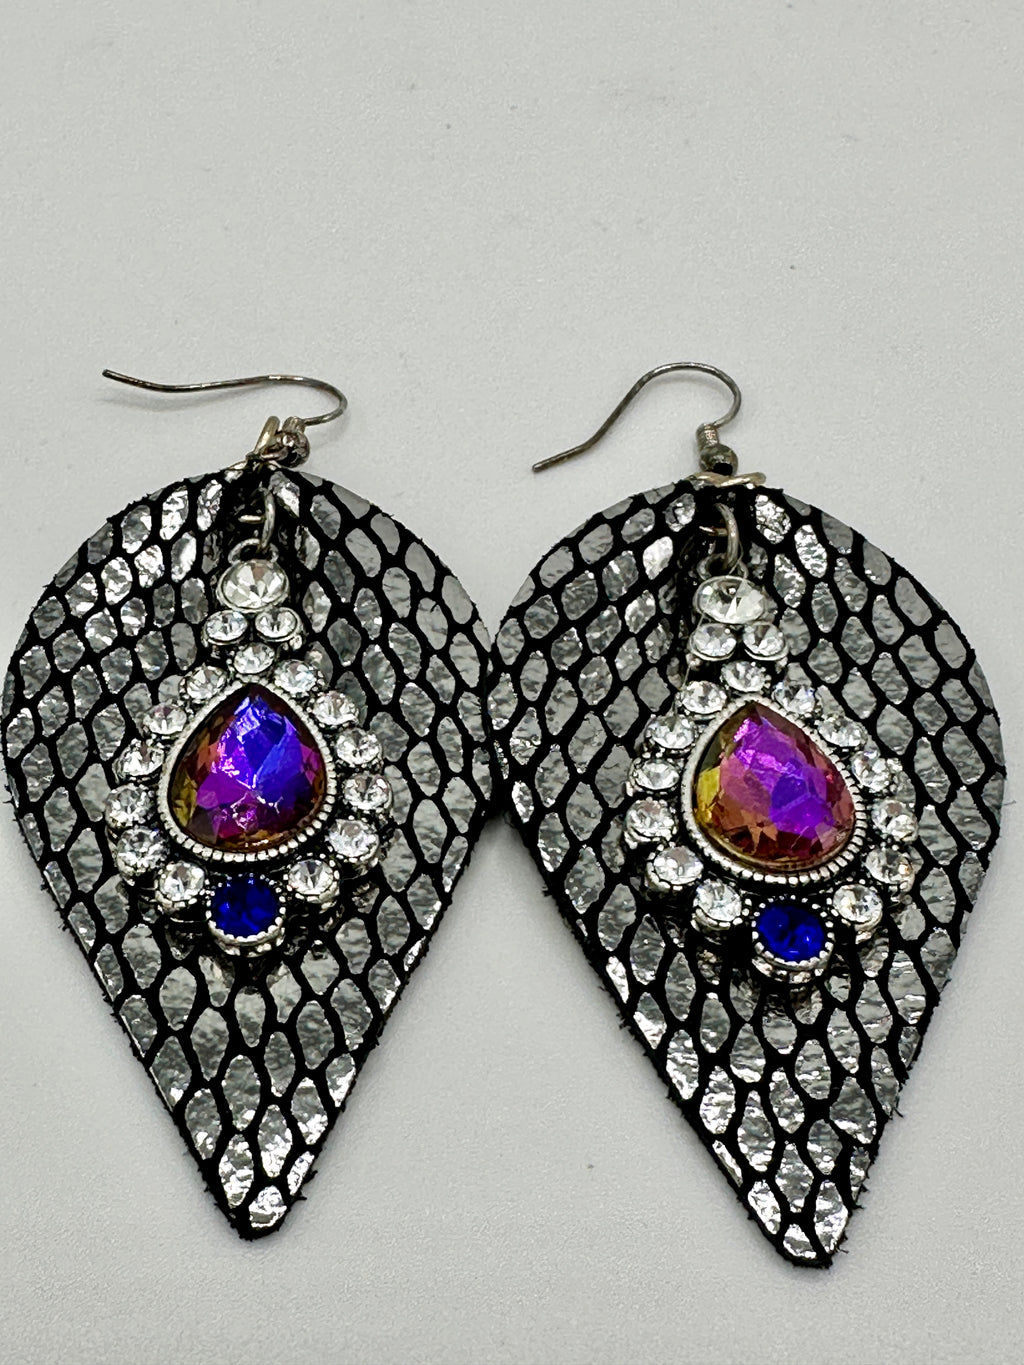 Black & Silver Leather Alligator Skin Earrings w/ Purple & Clear Rhinestones